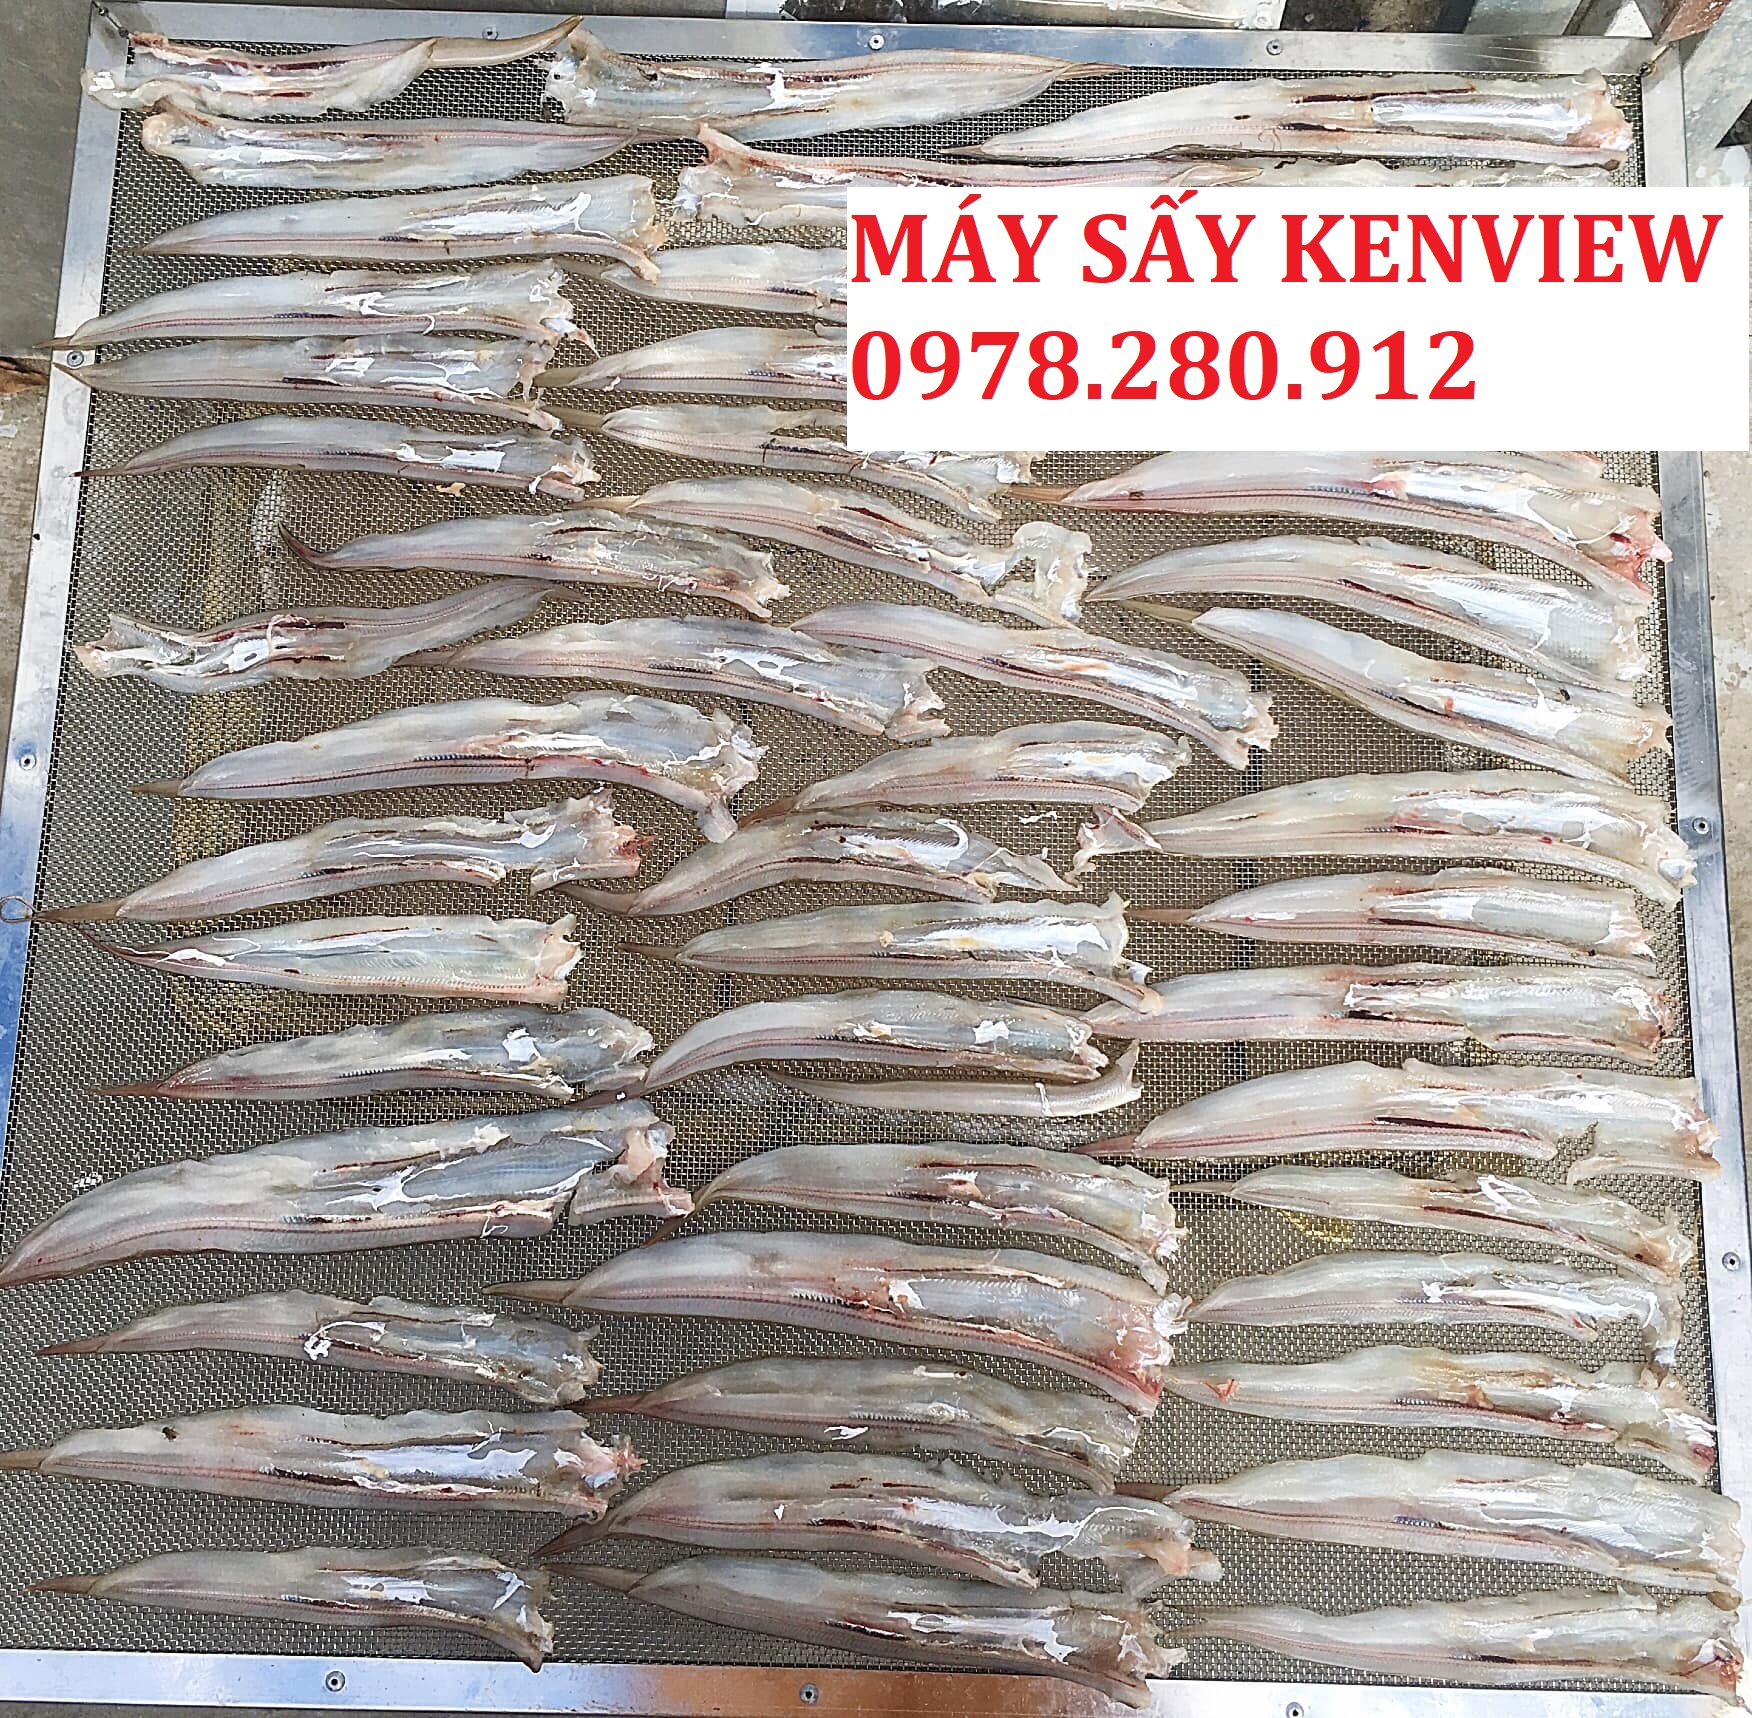 Kenview cung cấp máy sấy hải sản cho Khách tại Quảng Bình- sấy cá, tôm, mực 